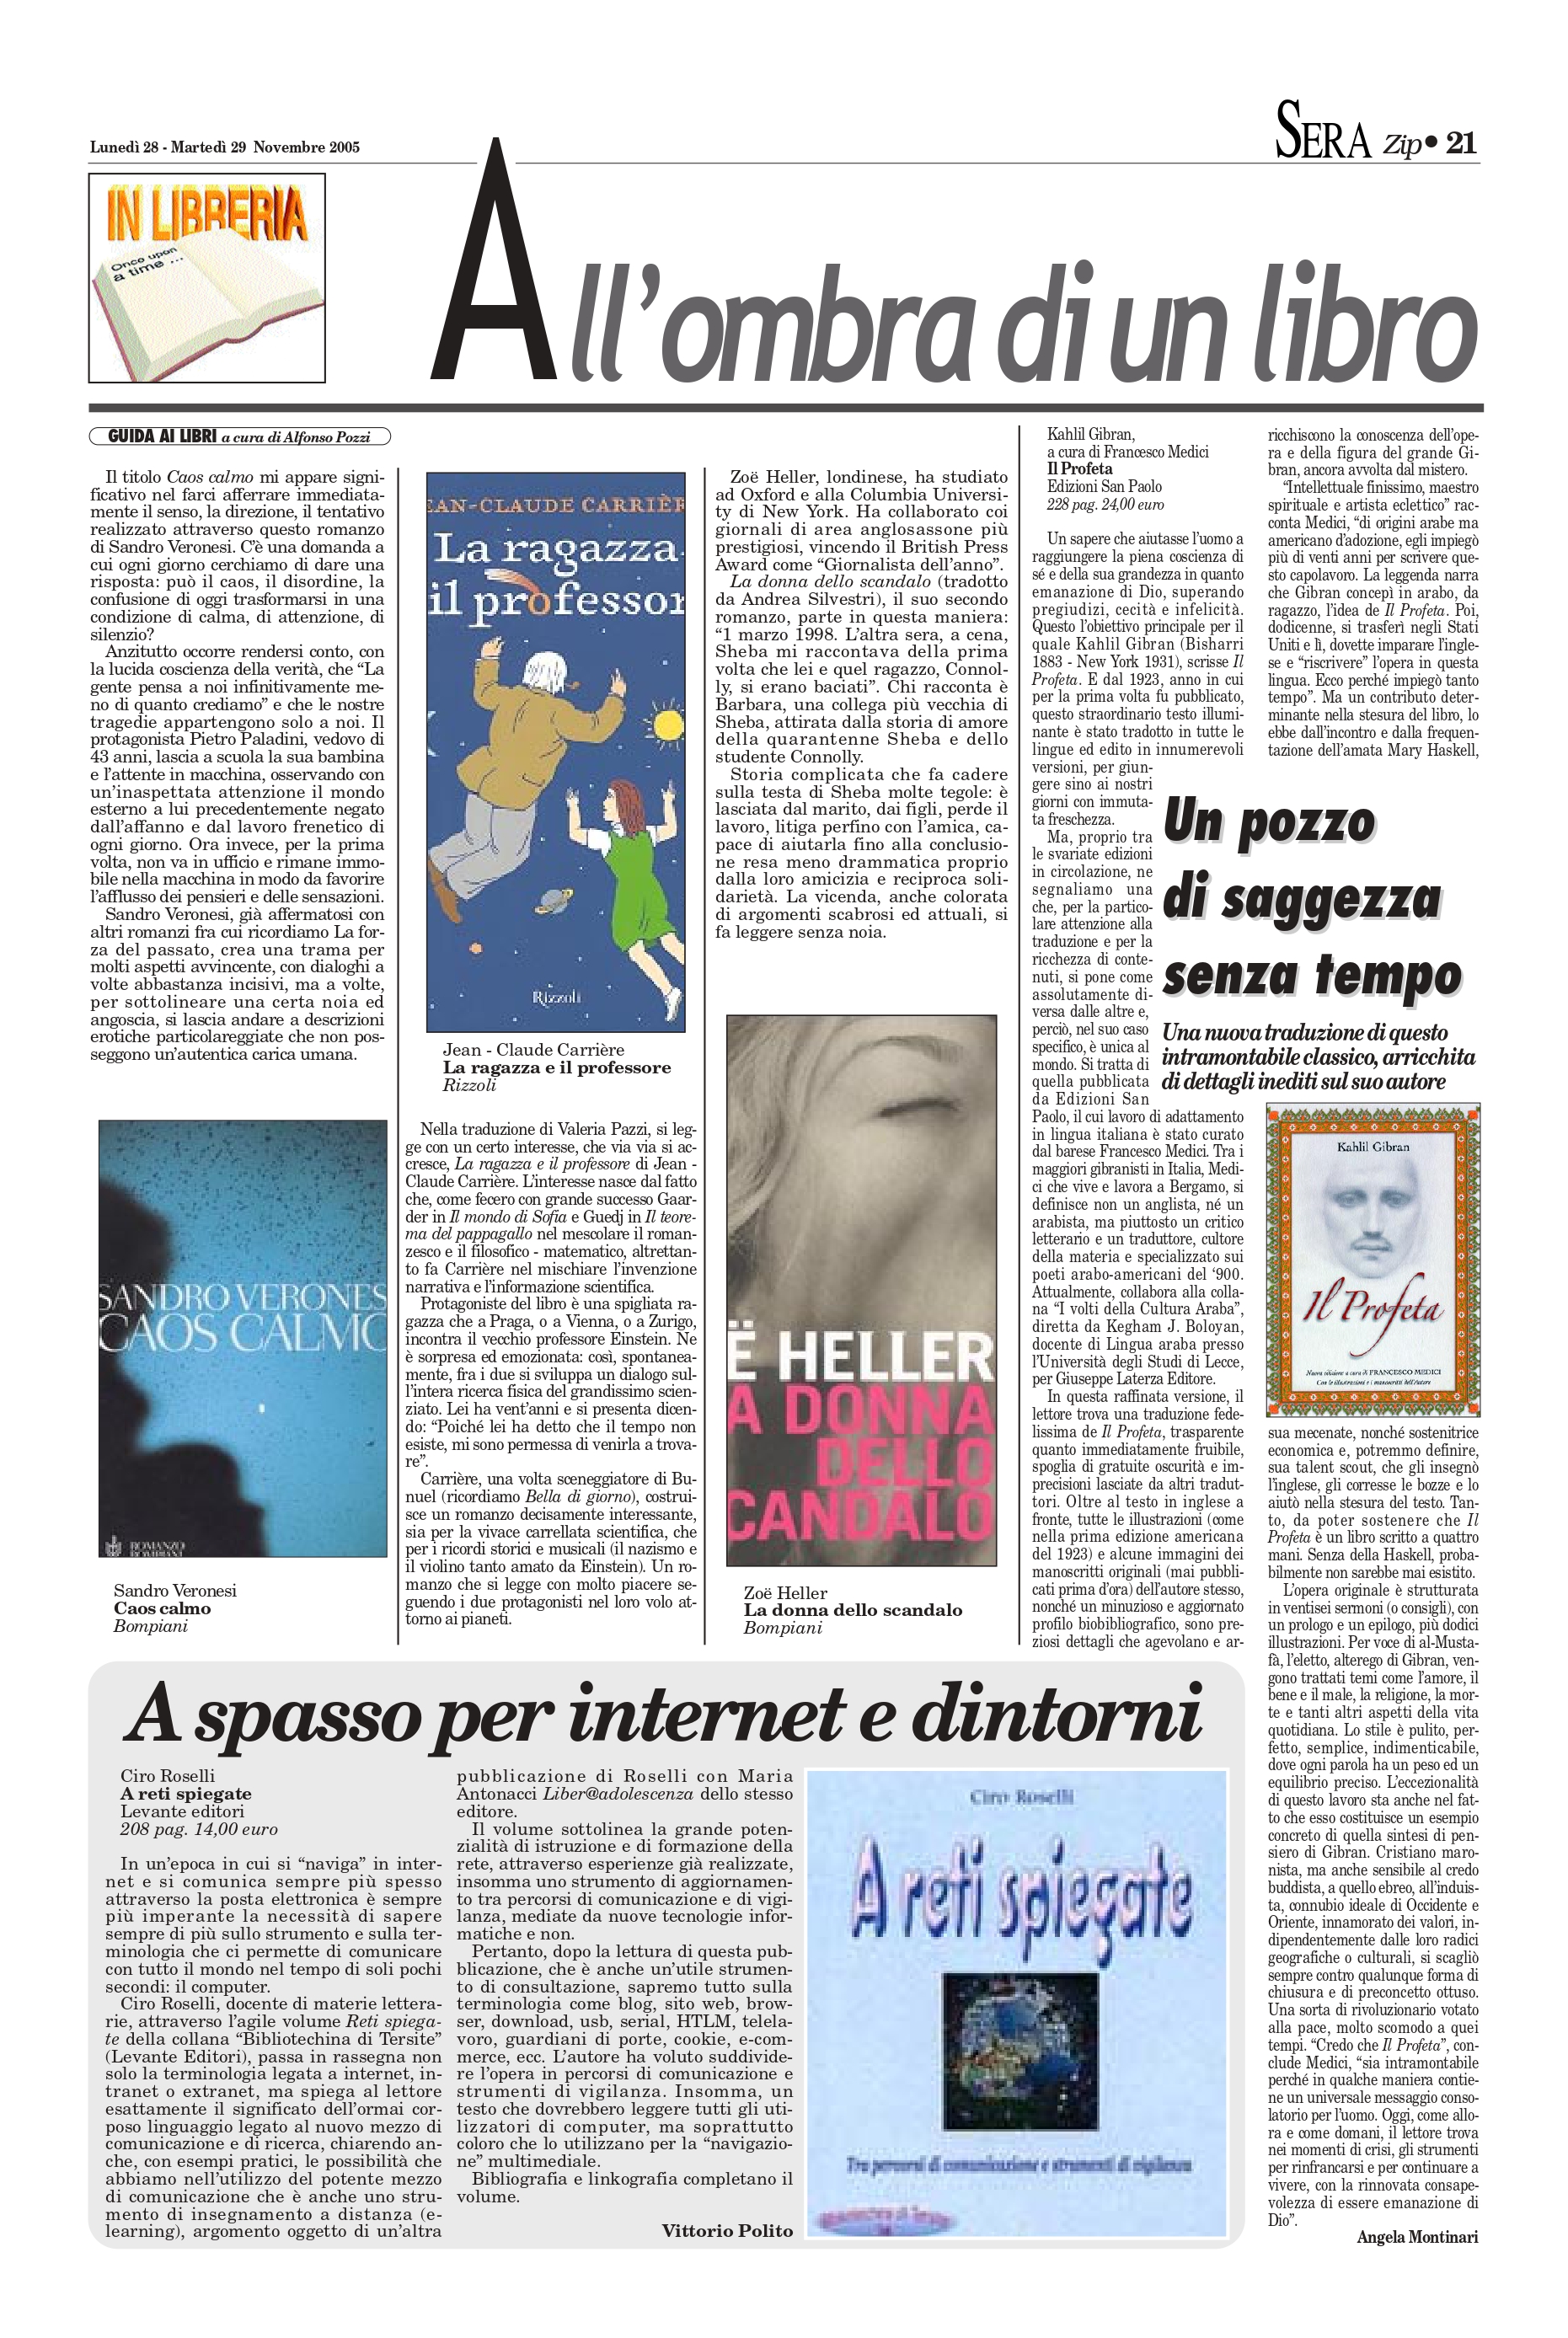 Angela Montinari, "Un pozzo di saggezza senza tempo", BariSera, Nov 28-29, 2005, p. 21 (review)